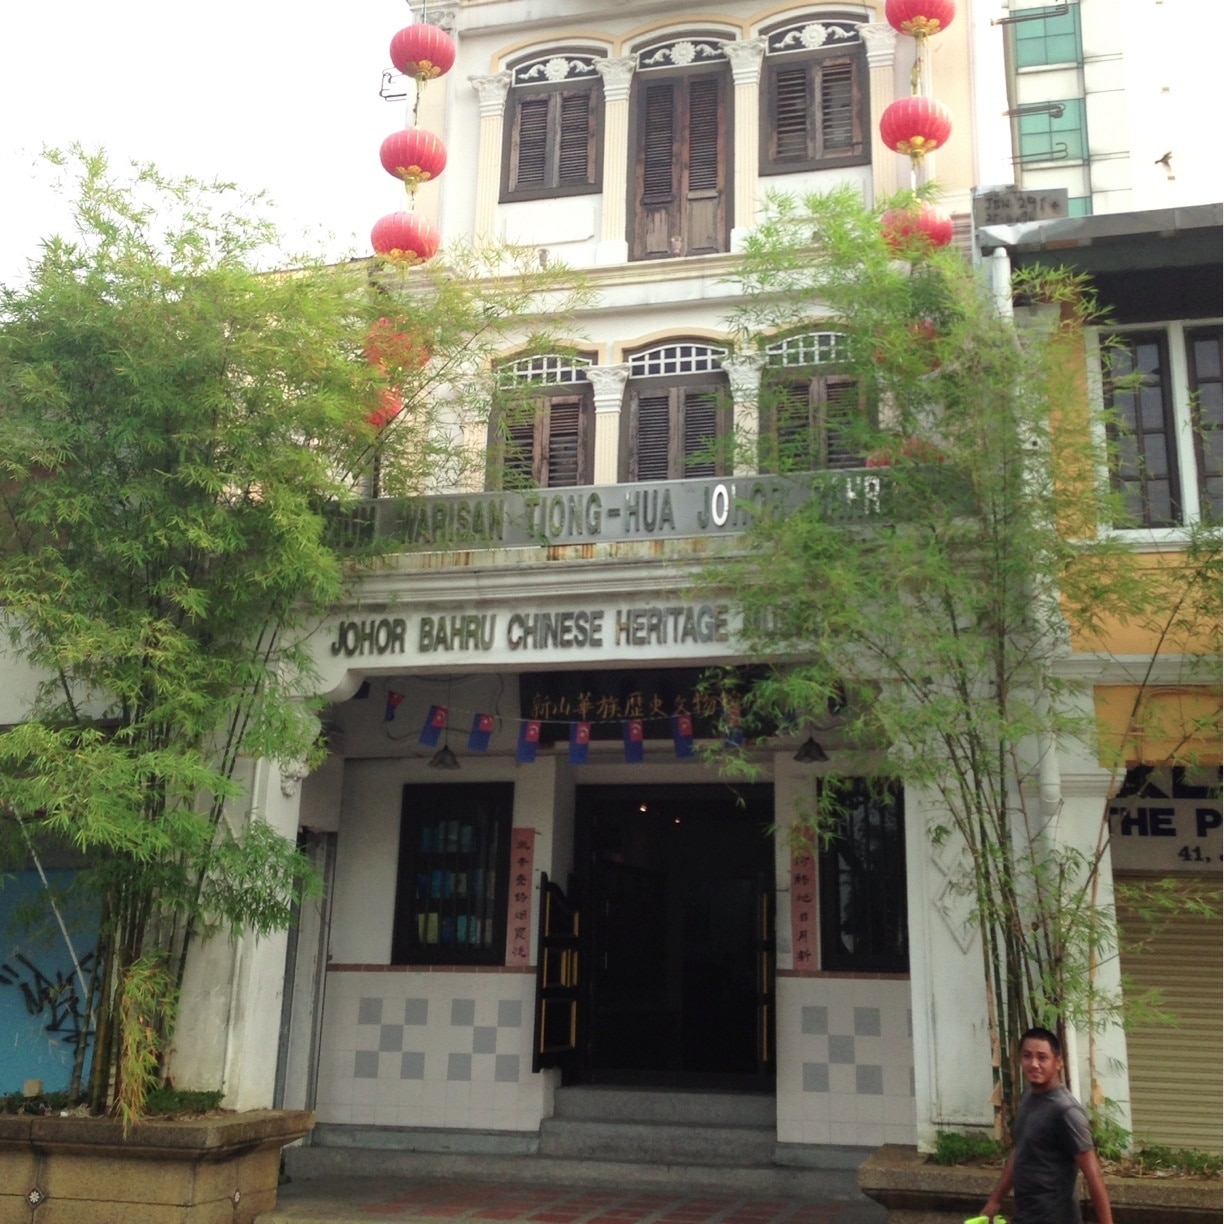 Johor Bahru Chinese Heritage Museum, Johor Bahru, Johor, Malaysia